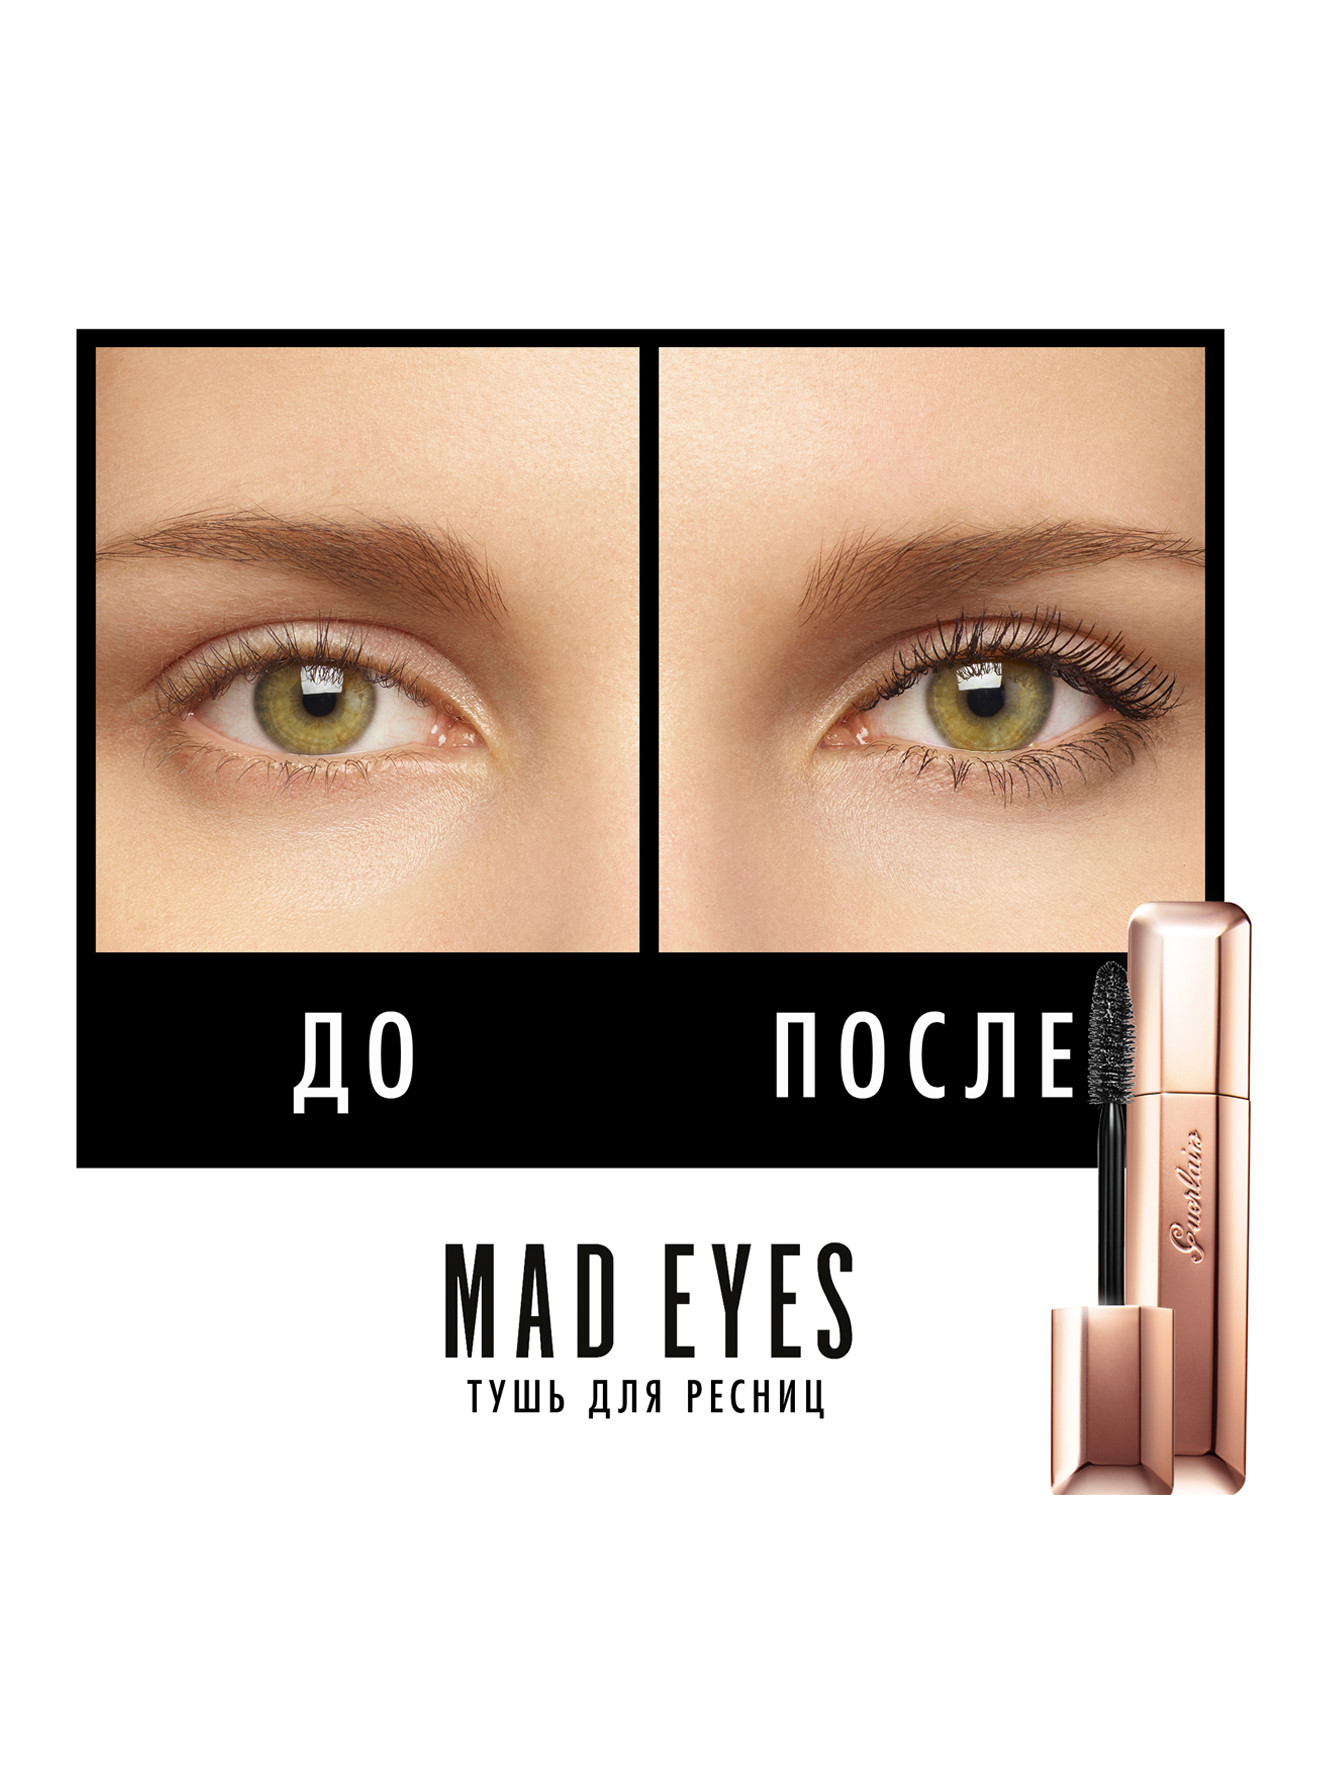 Mad Eyes Mascara Тушь для ресниц объем и подкручивание, 02 коричневый, 8,5 мл - Обтравка1